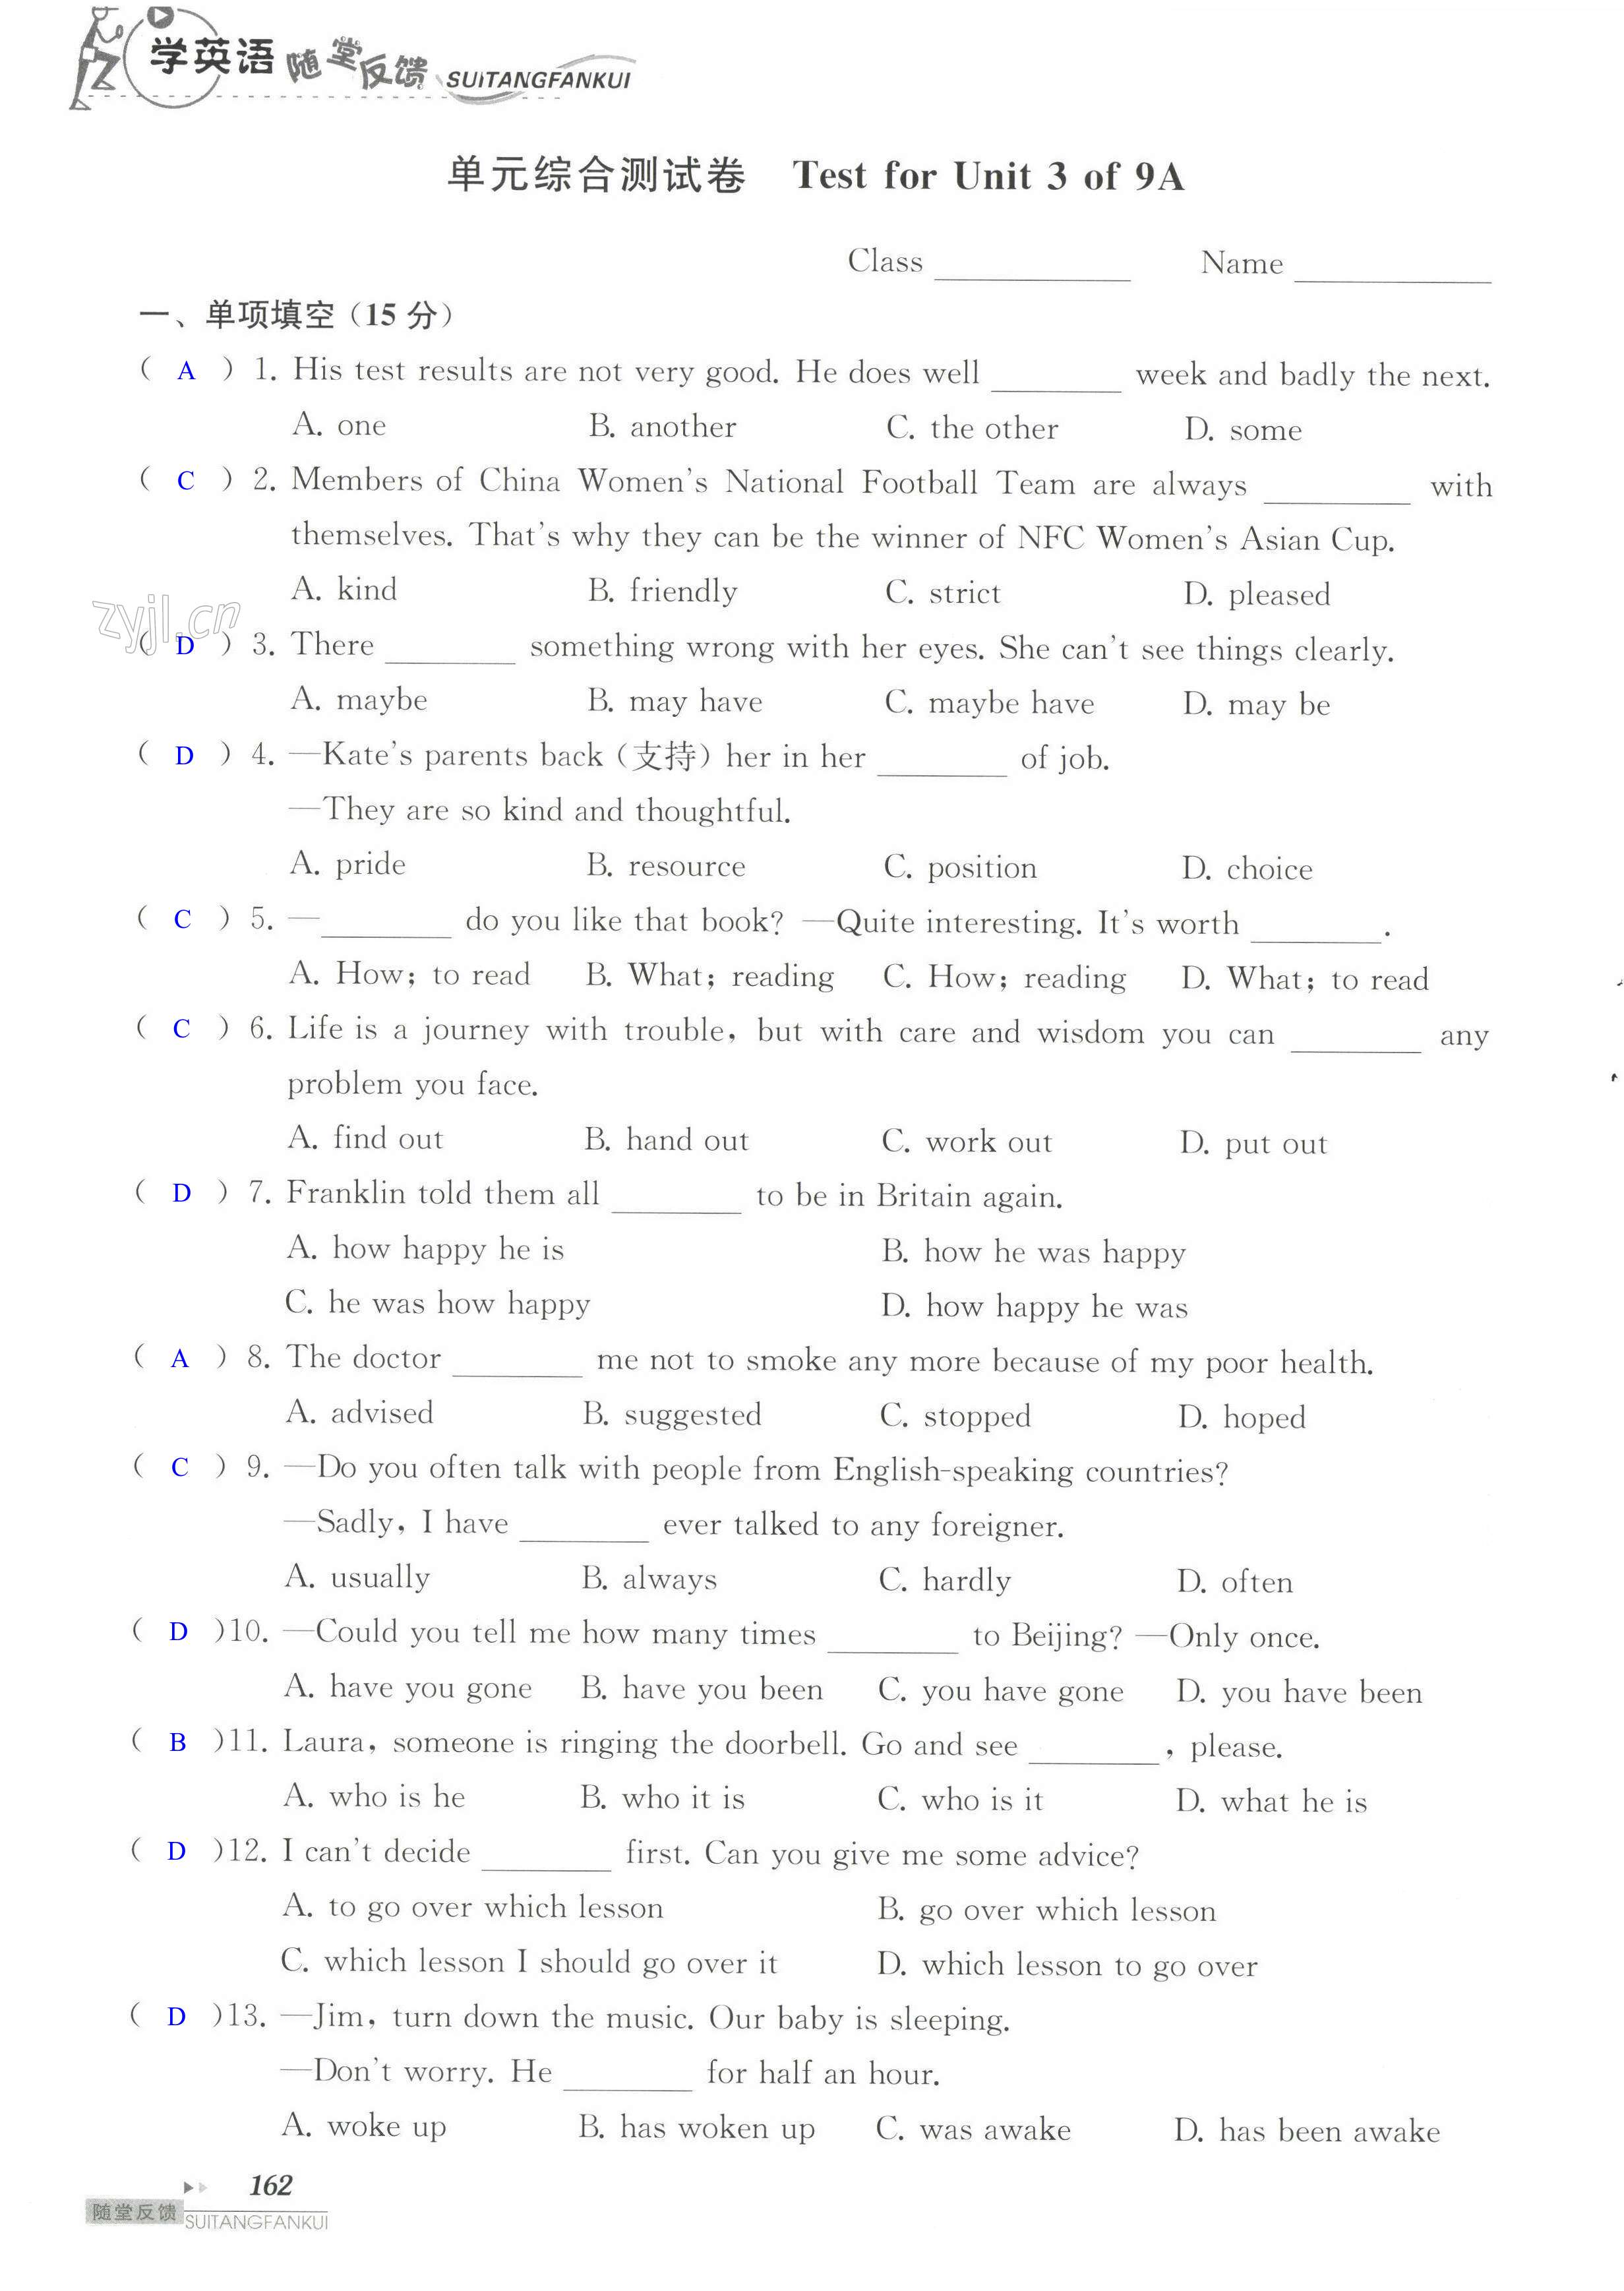 单元综合测试卷 Test for Unit 3 of 9A - 第162页